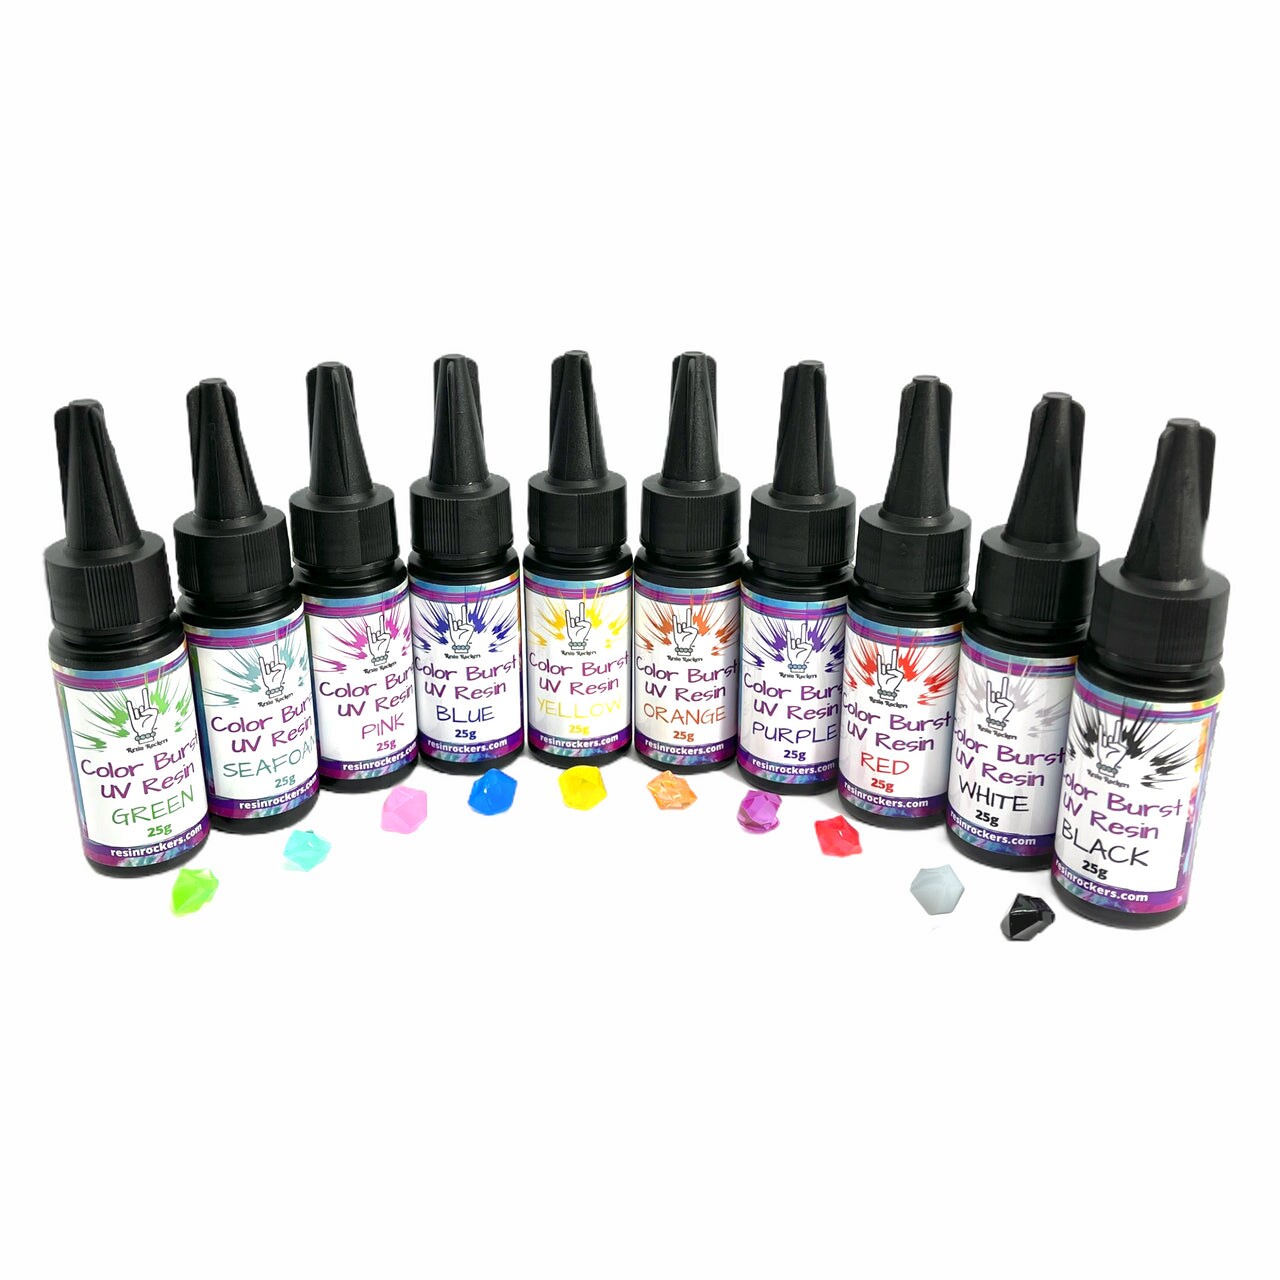 Color Burst Colored UV Resin Kit Hard Type 10 - 25g Bottles - 250g Total